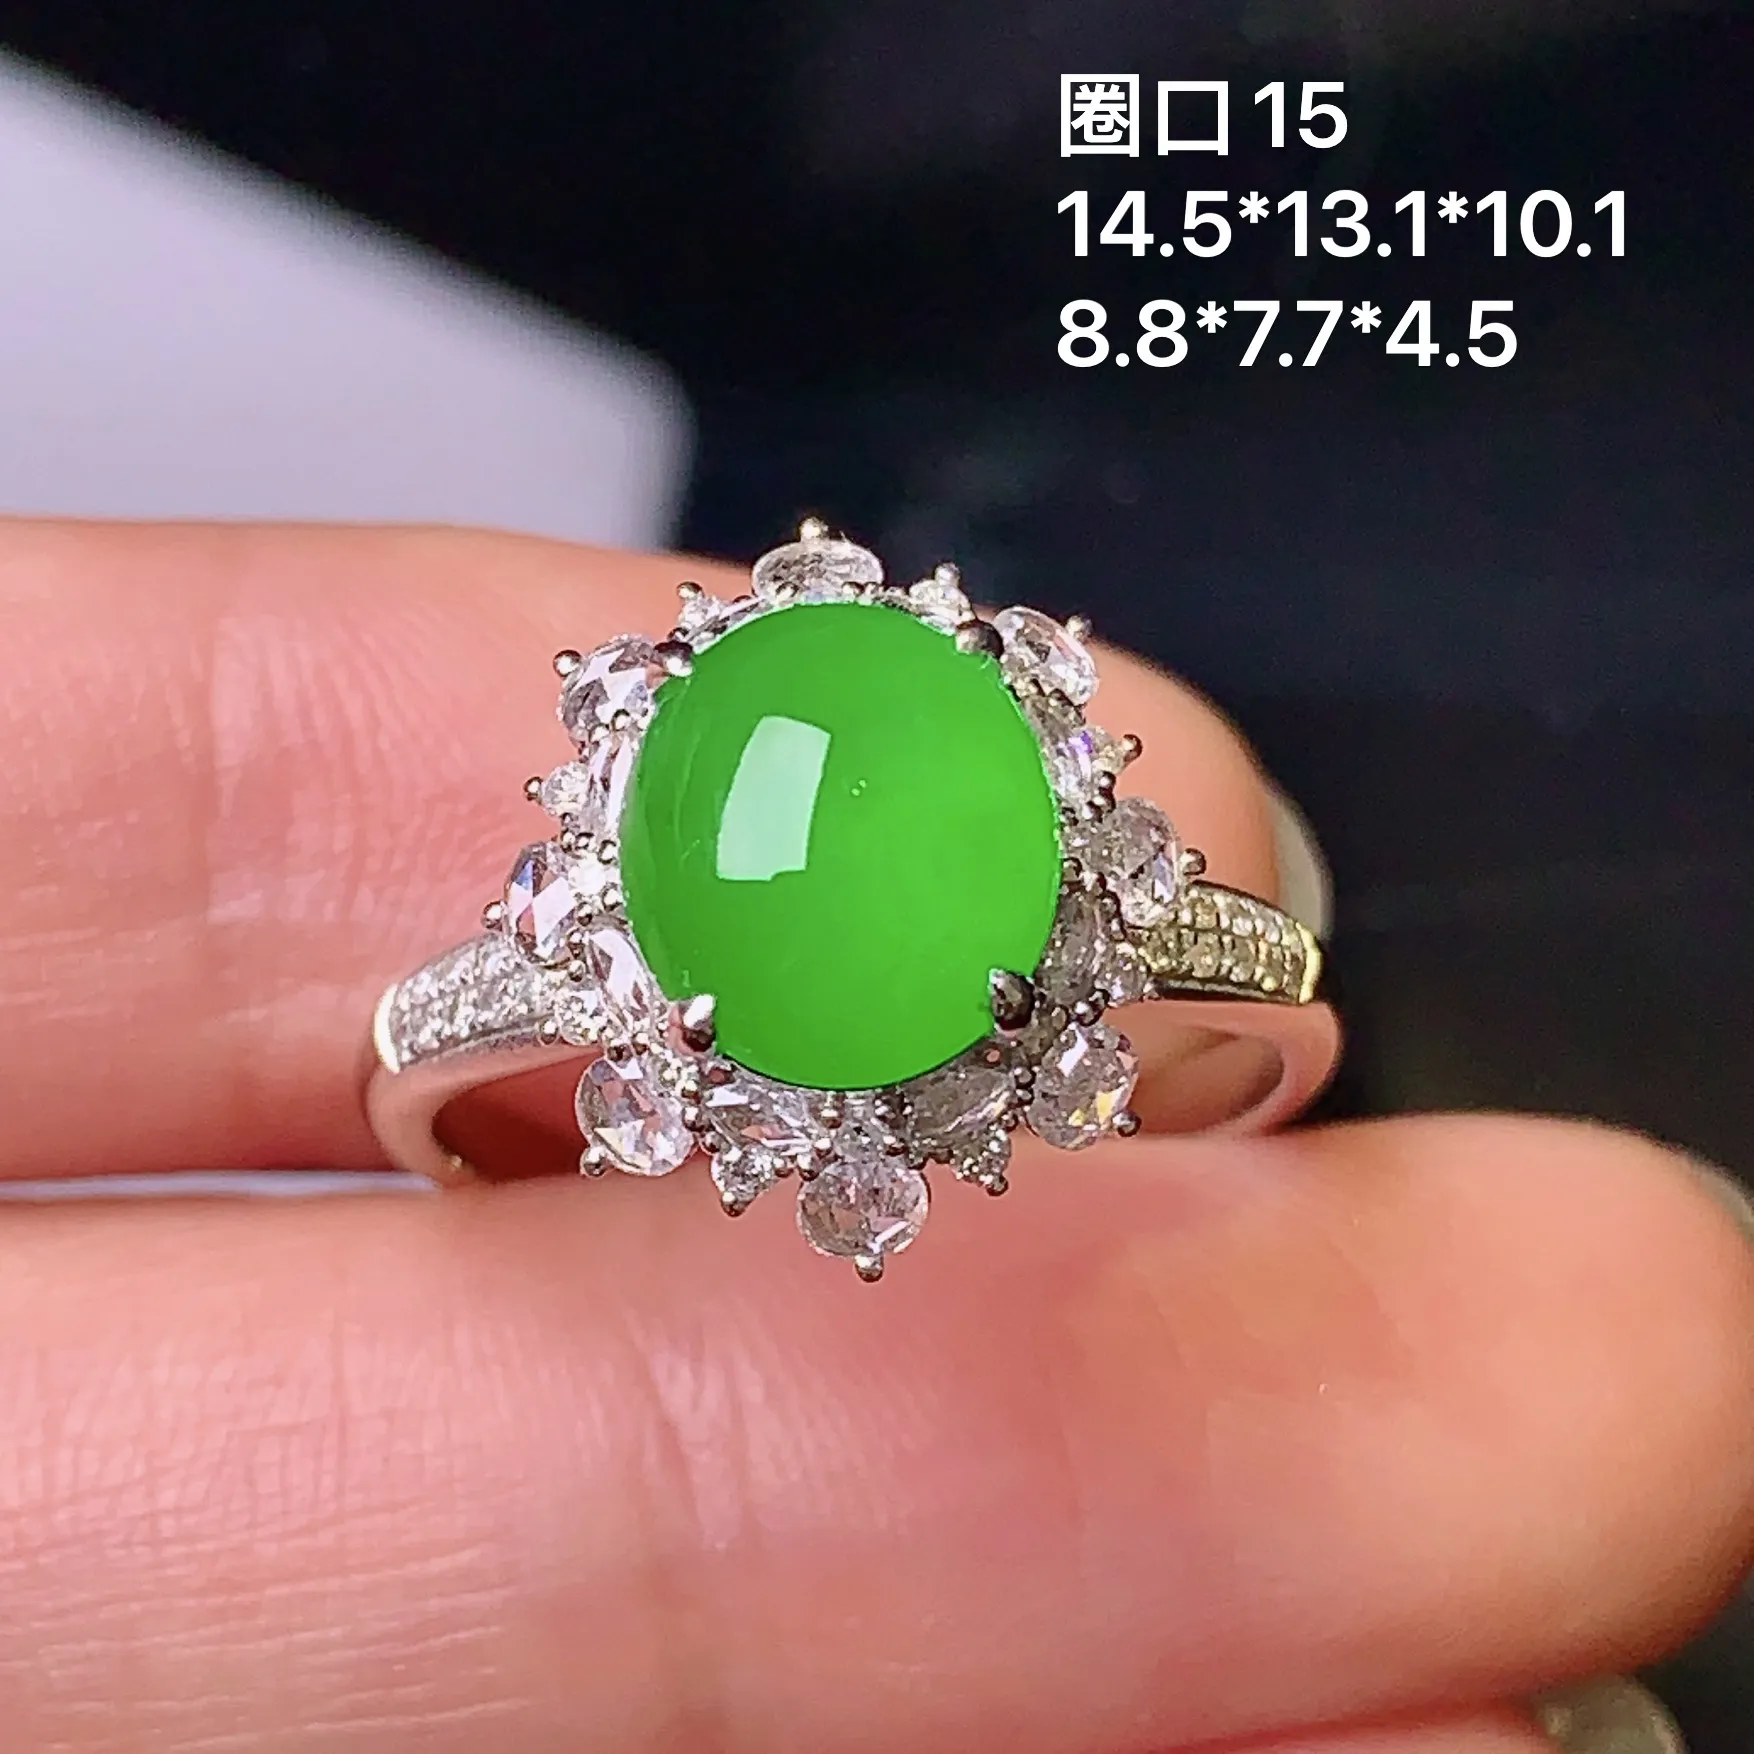 18k金钻镶嵌满绿蛋面戒指 玉质细腻 色泽清新艳丽 圈口15 整体尺寸14.5*13.1*10.1